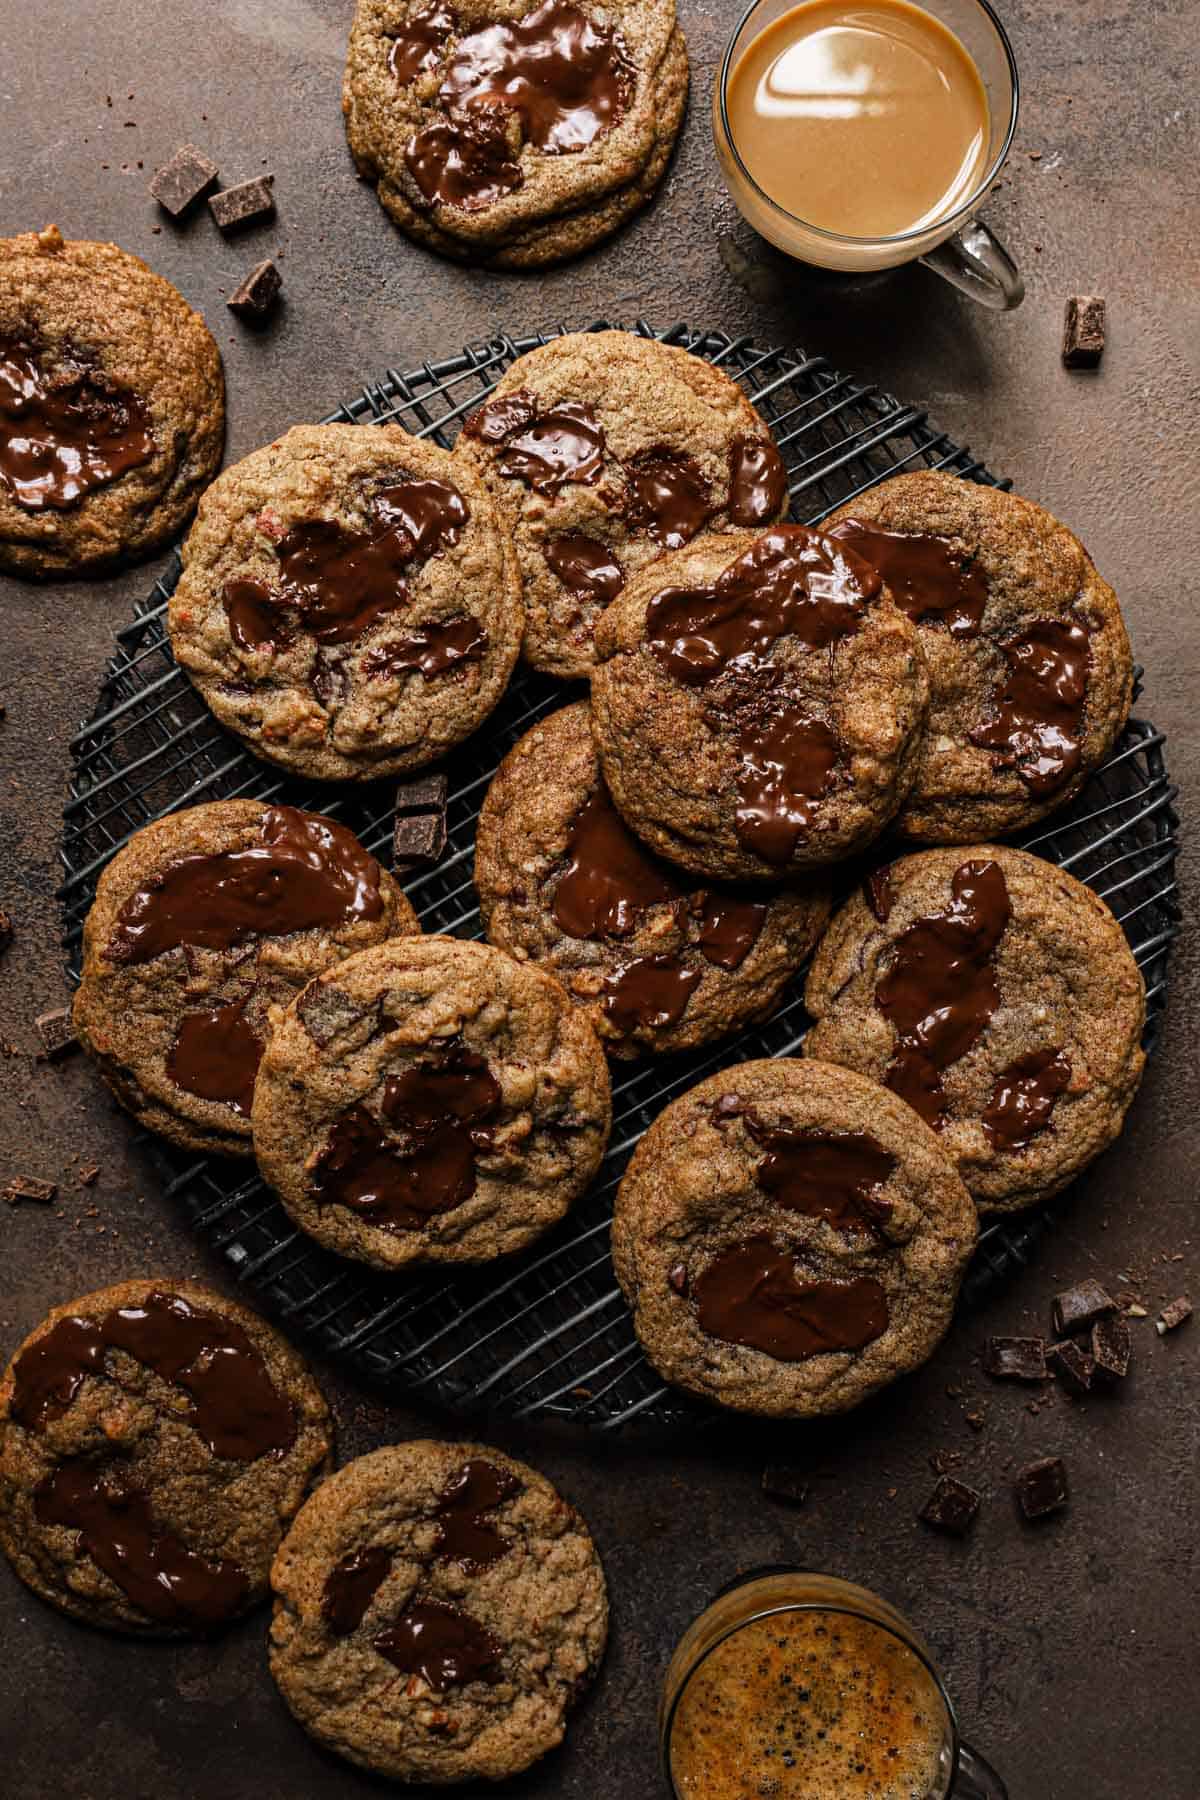 https://www.onesarcasticbaker.com/wp-content/uploads/2020/05/coffee-cookies-recipe.jpg